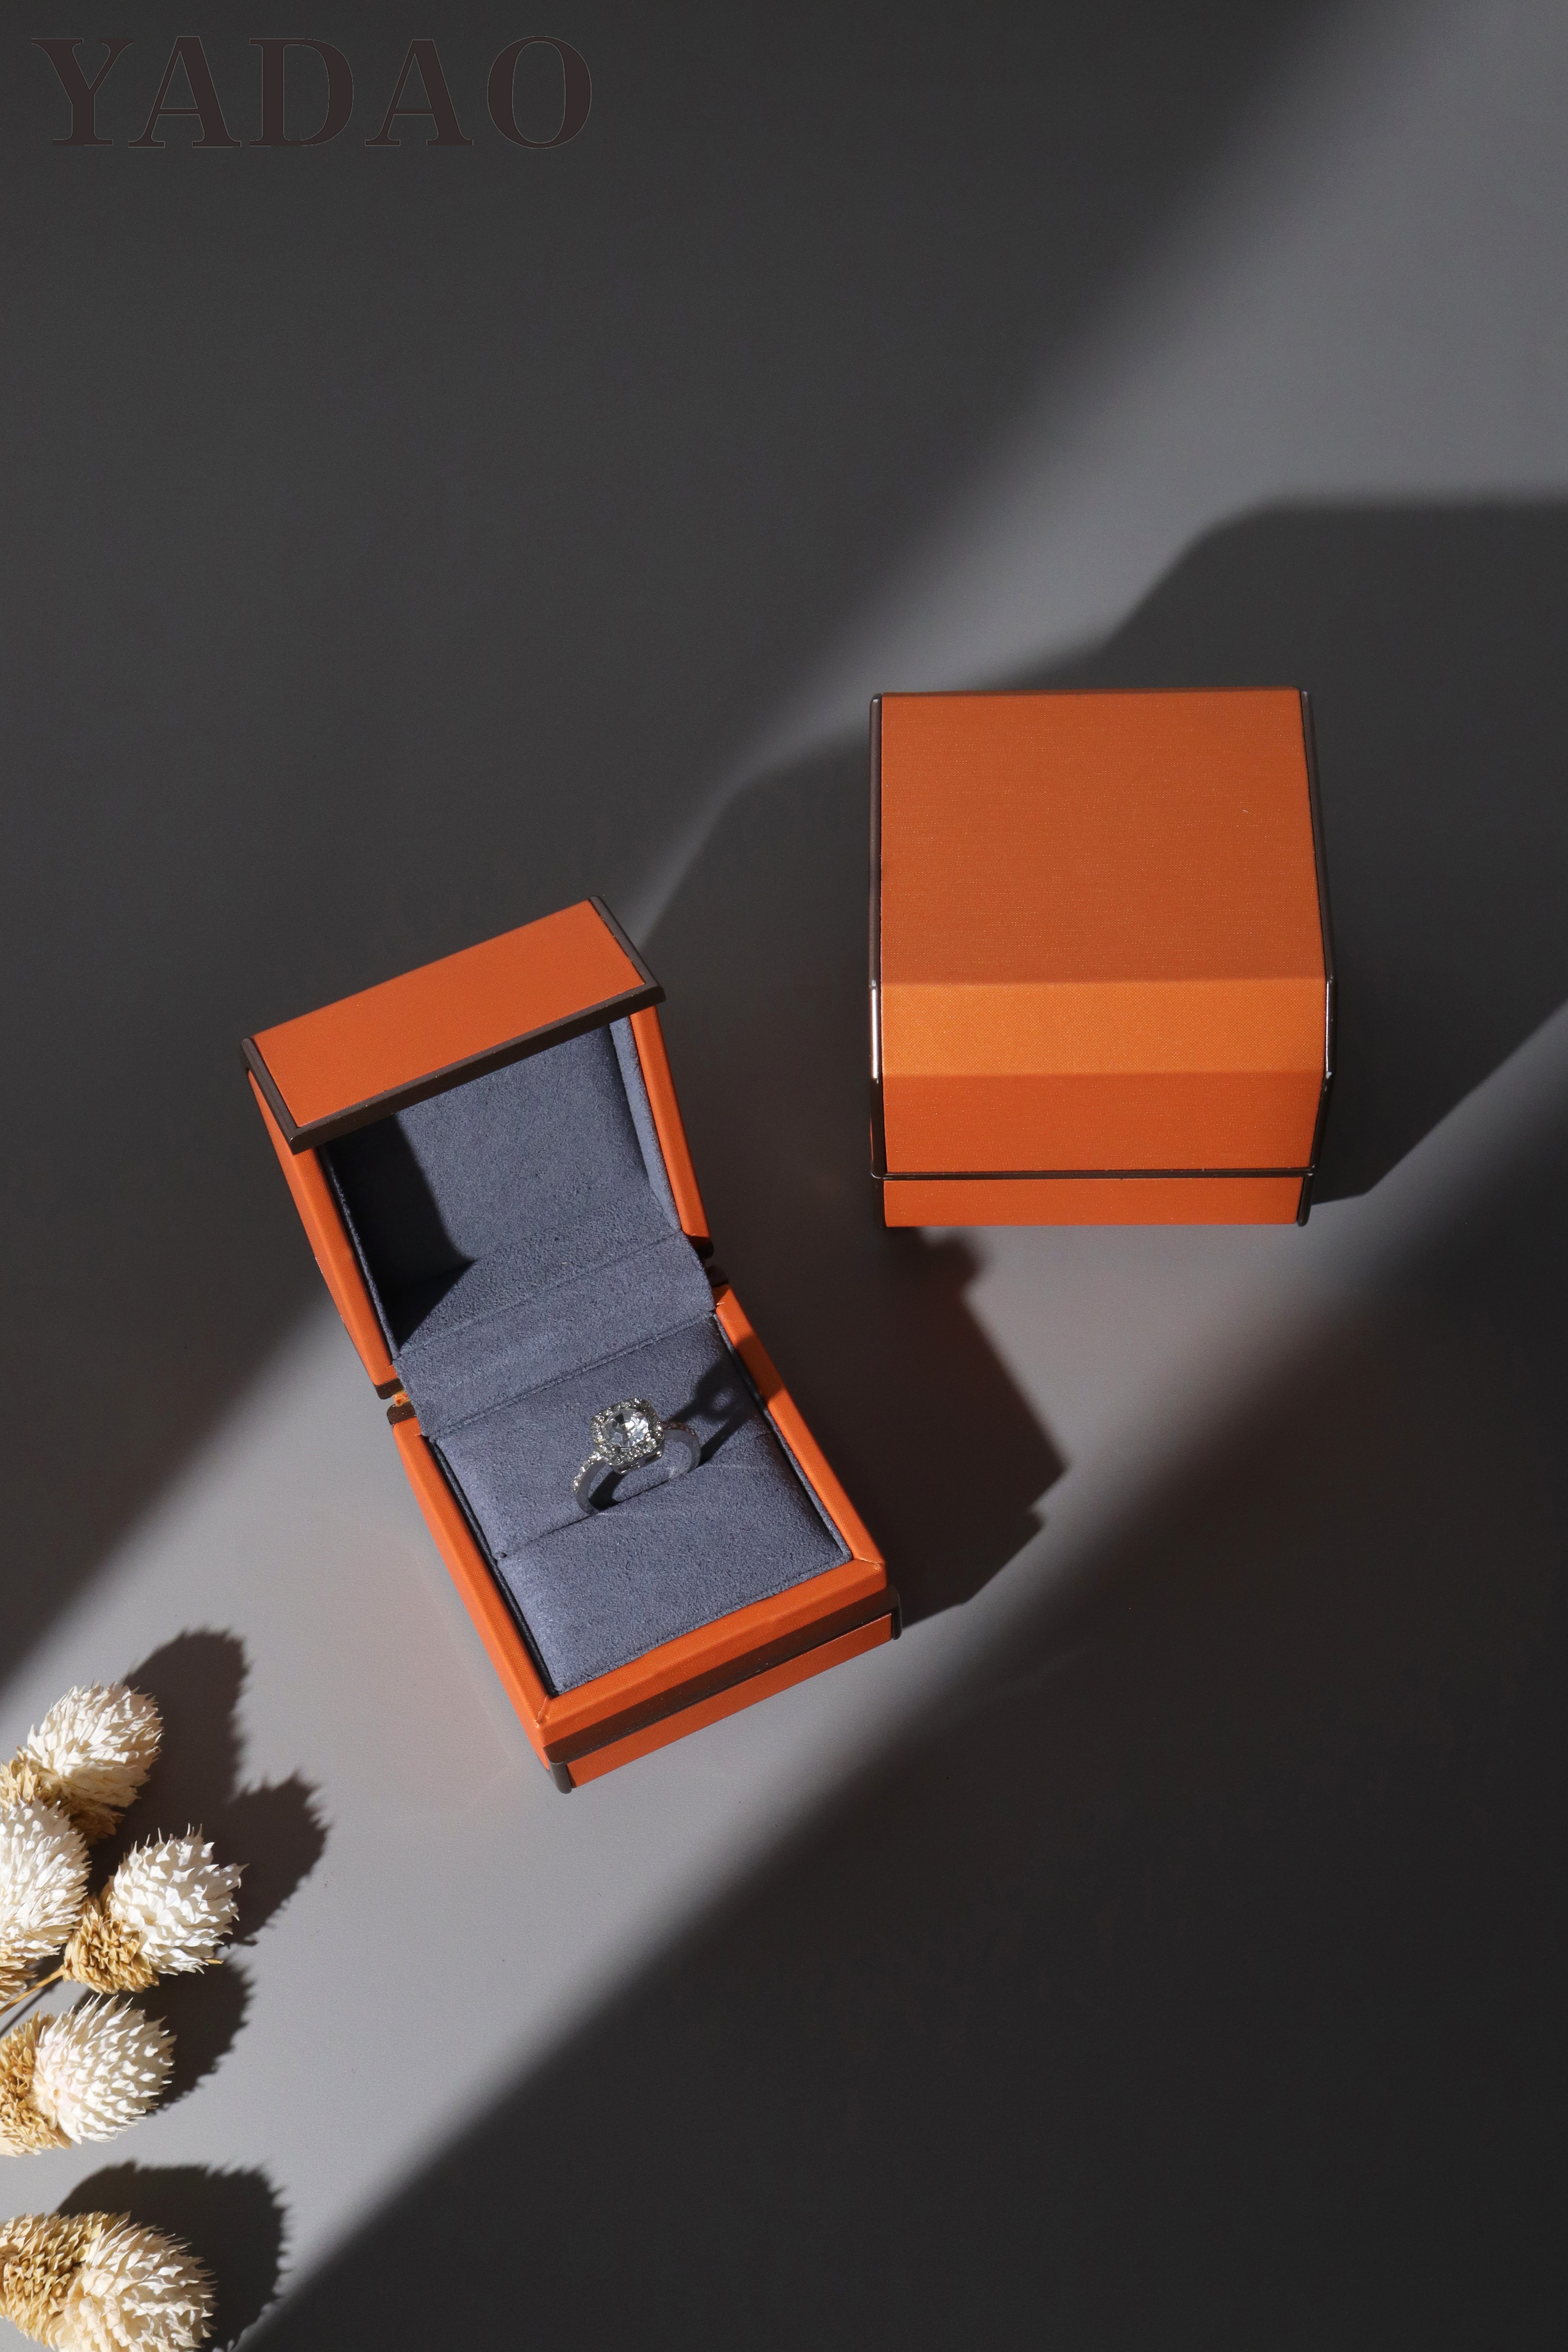 Čína Nově spuštěné hotové flip-top high-end šperky módní oblíbené obalové krabice výrobce